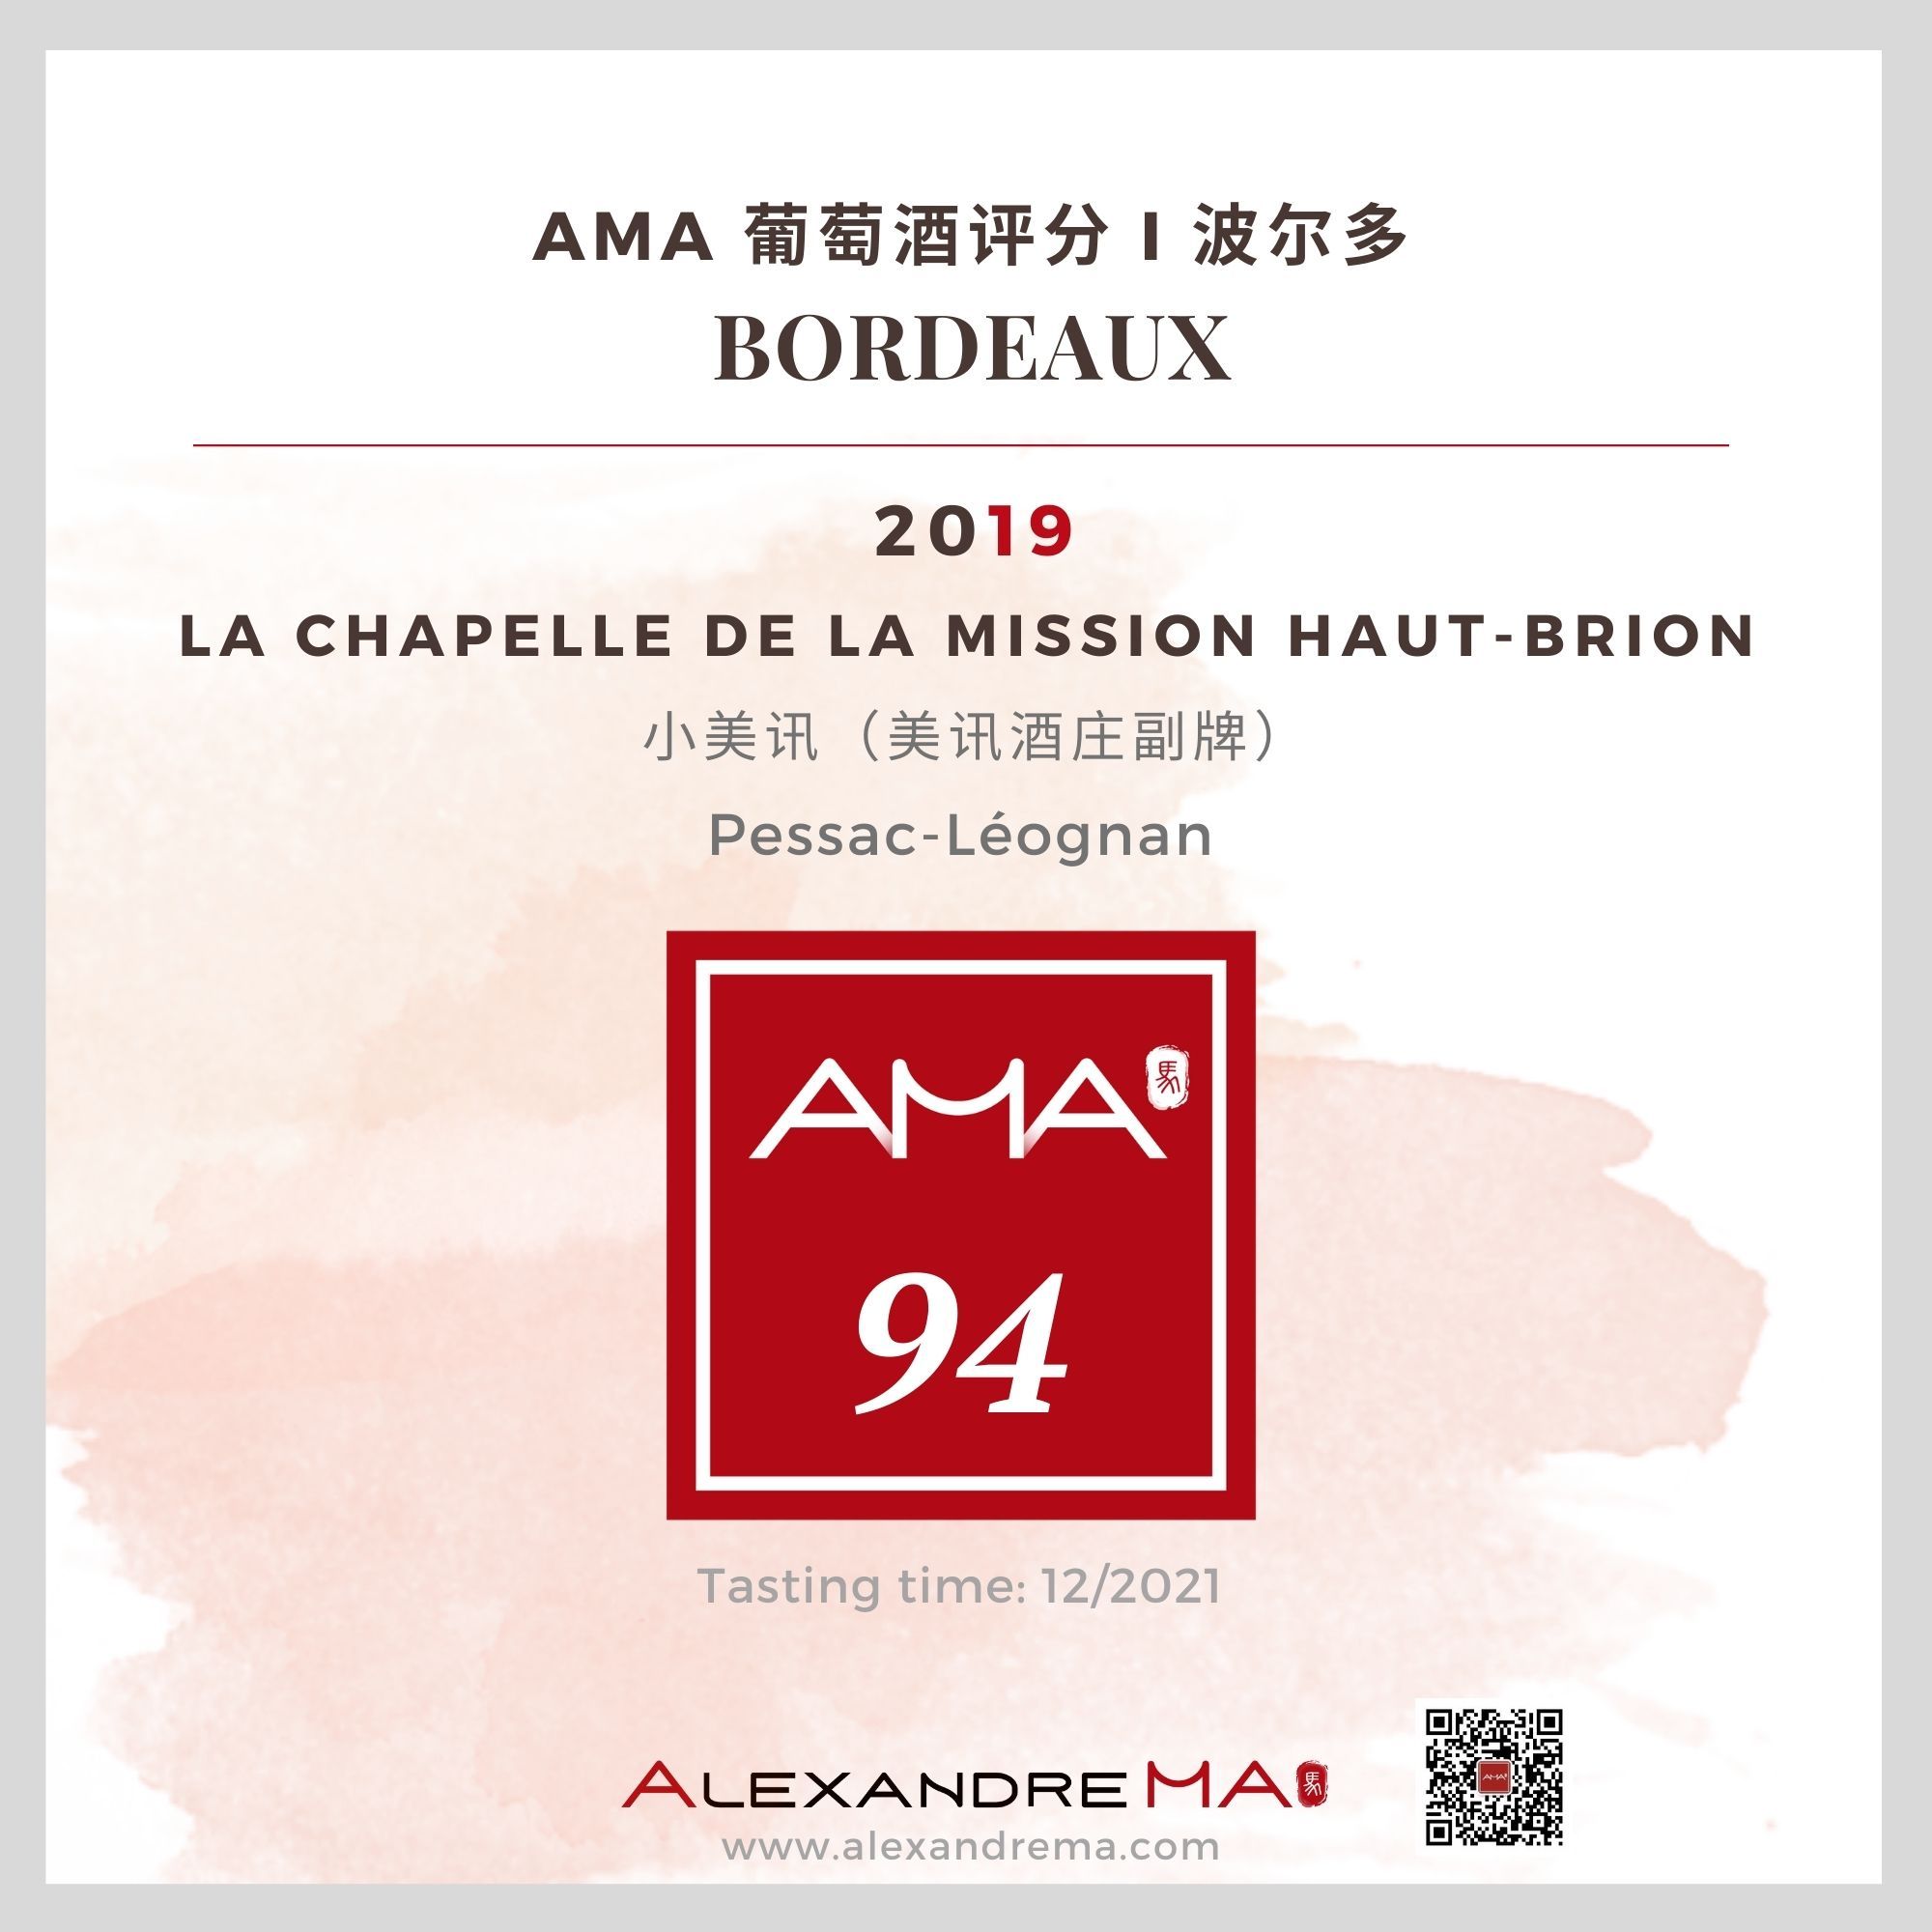 La Chapelle de la Mission Haut-Brion 2019 - Alexandre MA